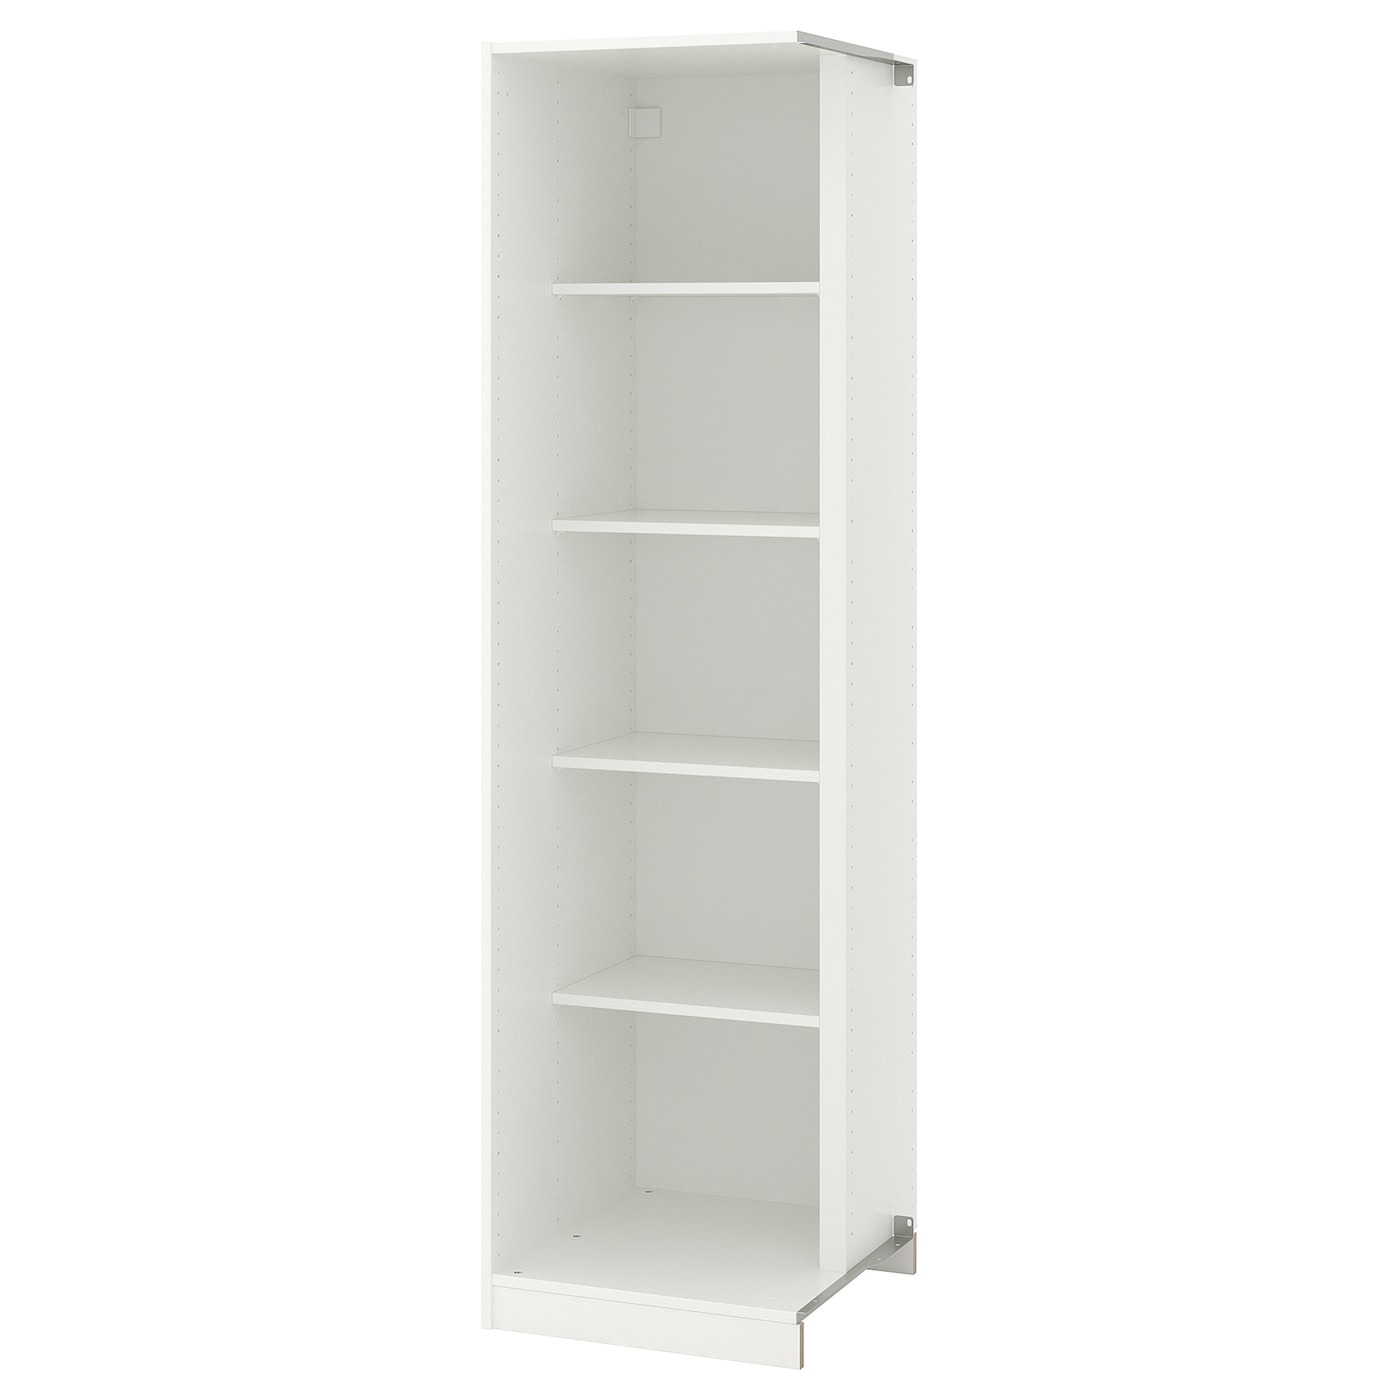 Дополнительный угловой модуль д/гардероба/4 полки - IKEA PAX, белый, 53x58x201, ПАКС ИКЕА